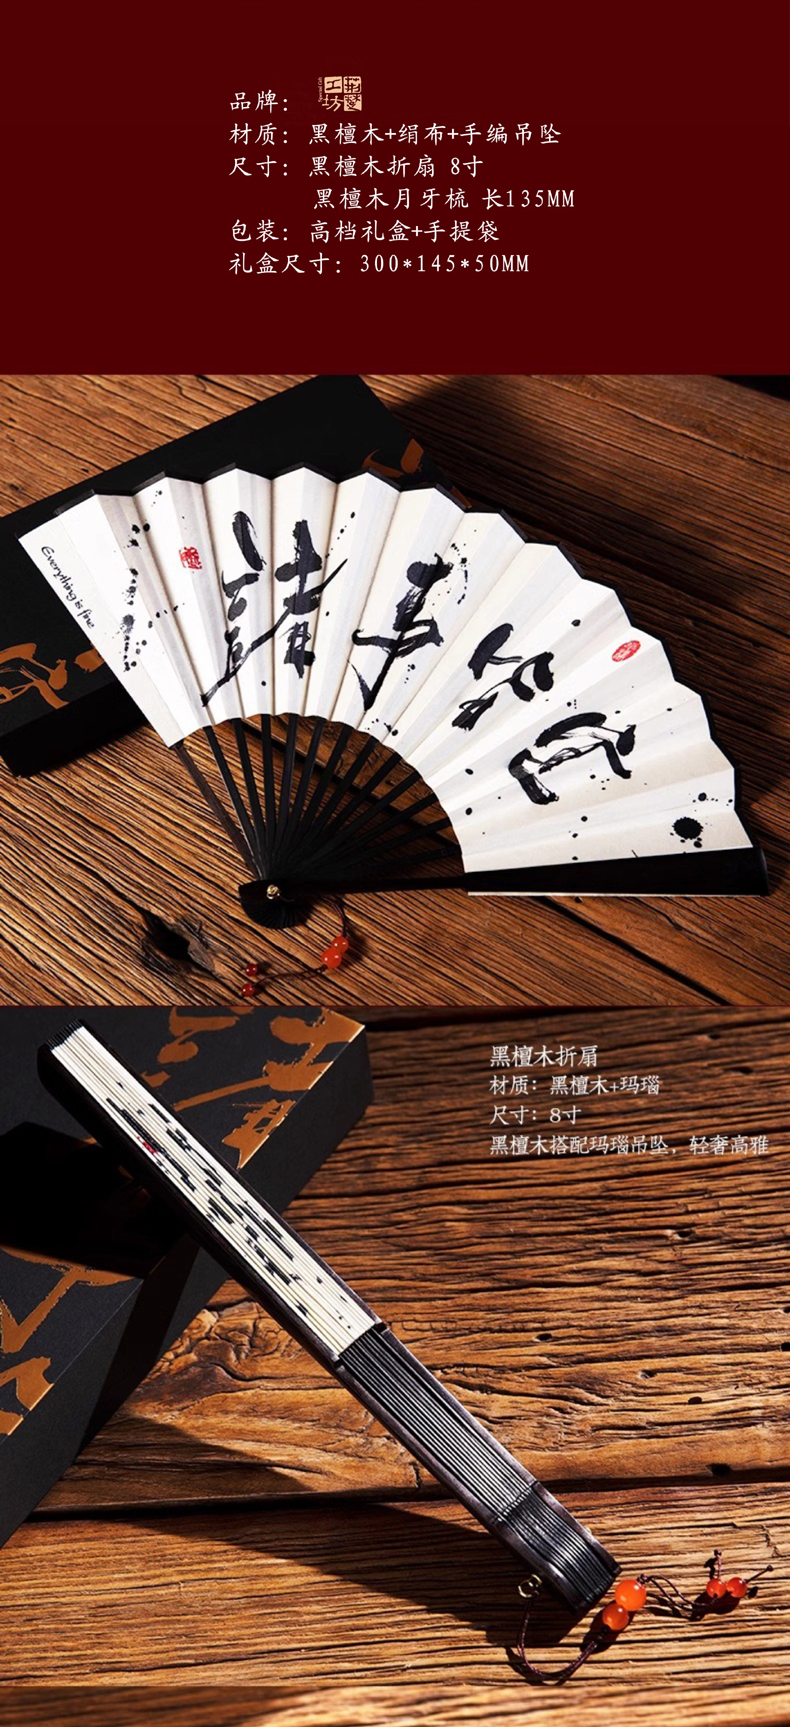  楚文化韵味的黑檀木折扇